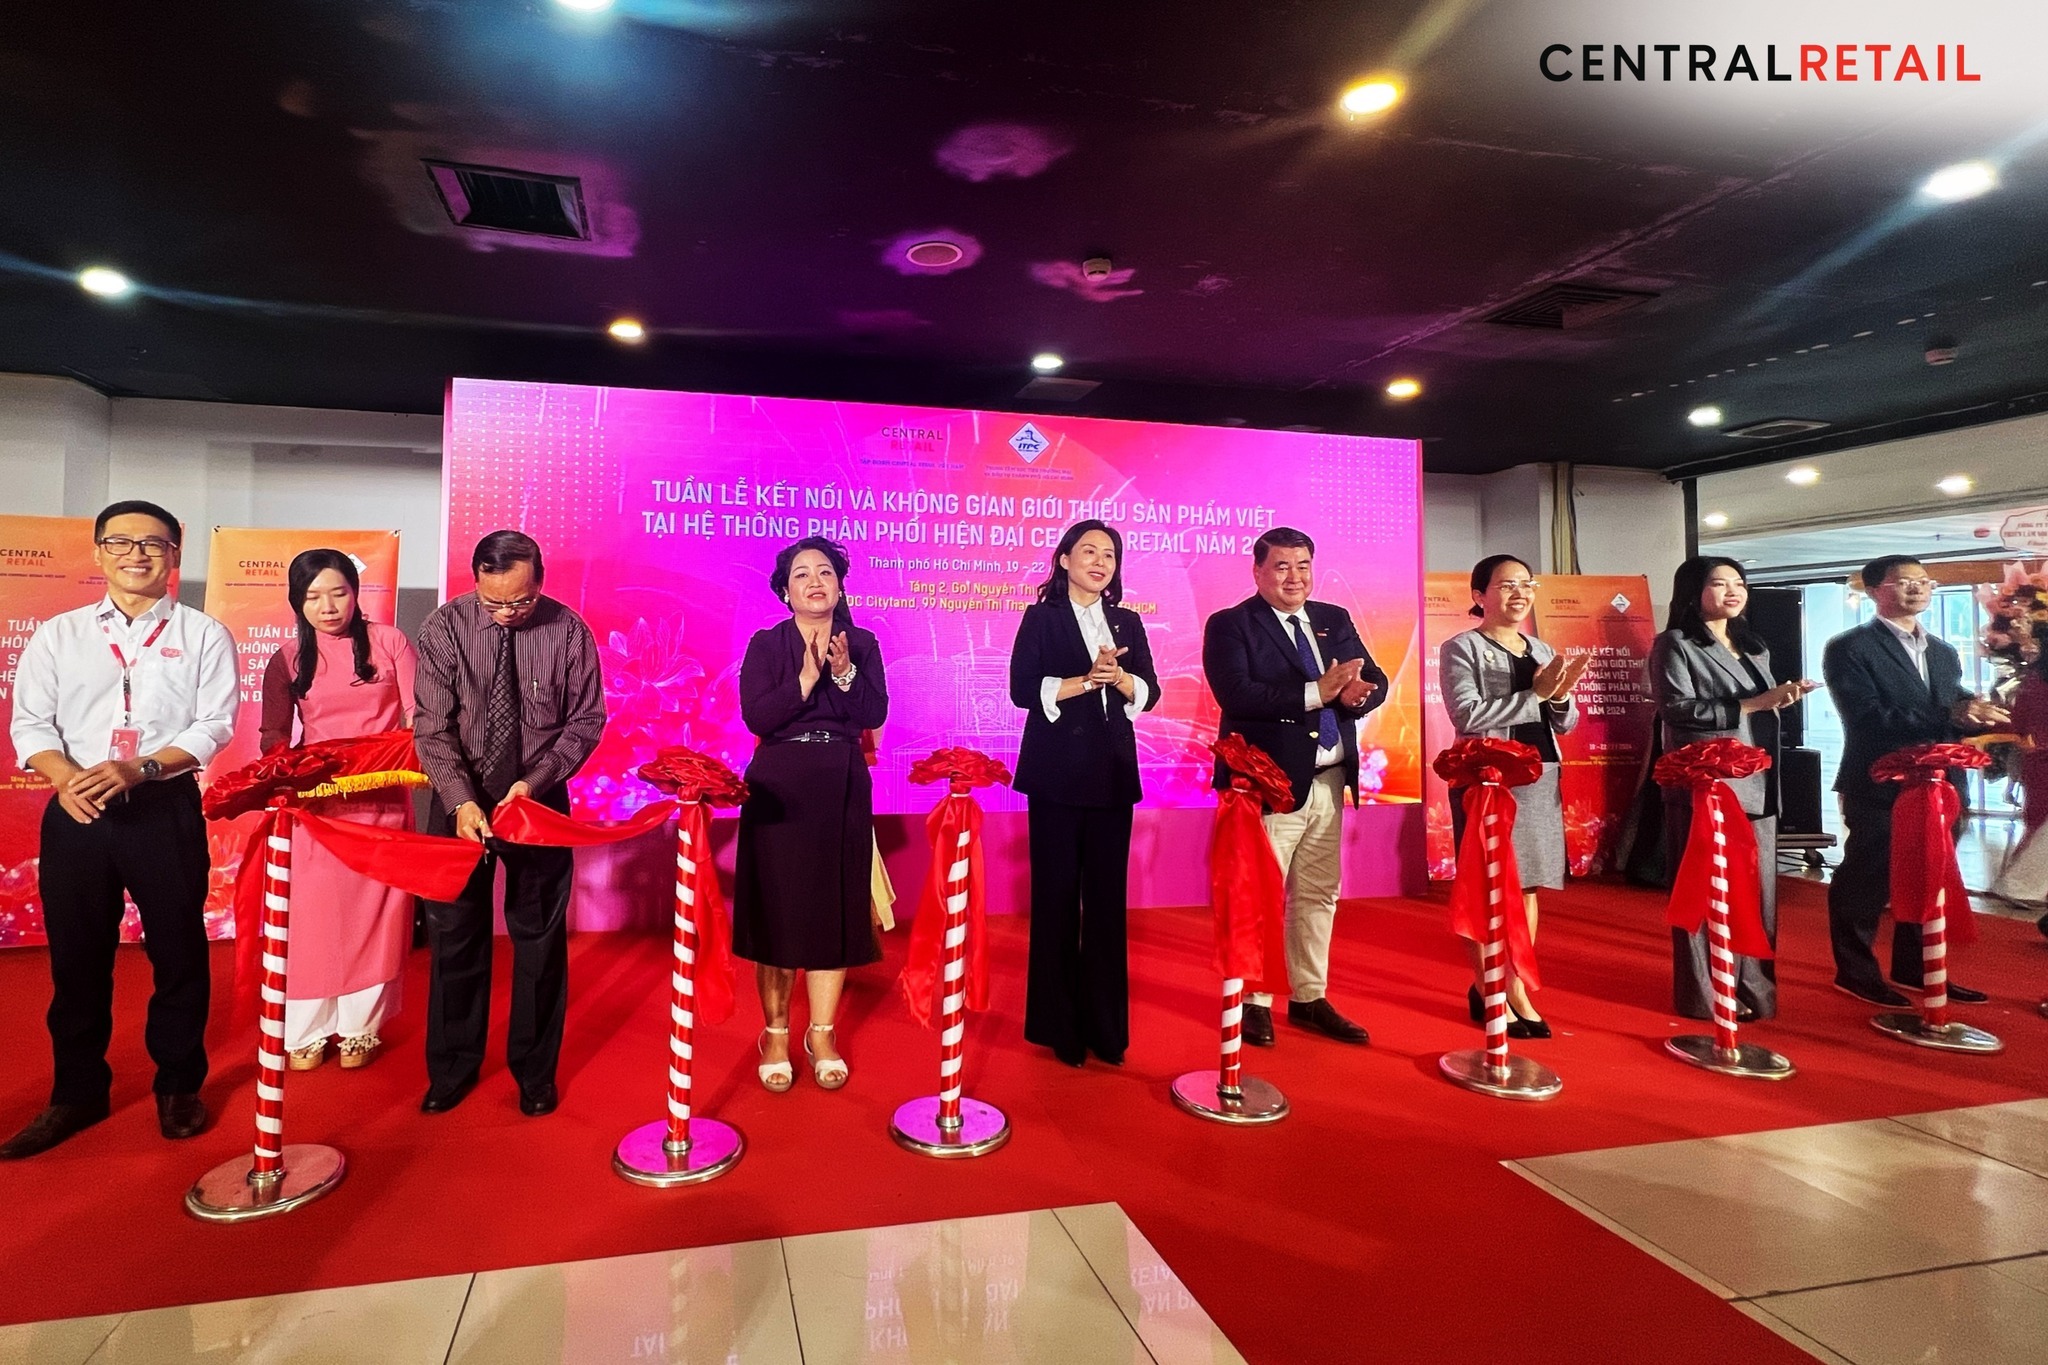 Central Retail Việt Nam phối hợp cùng Trung tâm Xúc tiến Thương mại và Đầu tư Tp. Hồ Chí Minh tổ chức “Tuần lễ kết nối và không gian giới thiệu sản phẩm Việt tại hệ thống phân phối hiện đại Central Retail Việt Nam năm 2024”